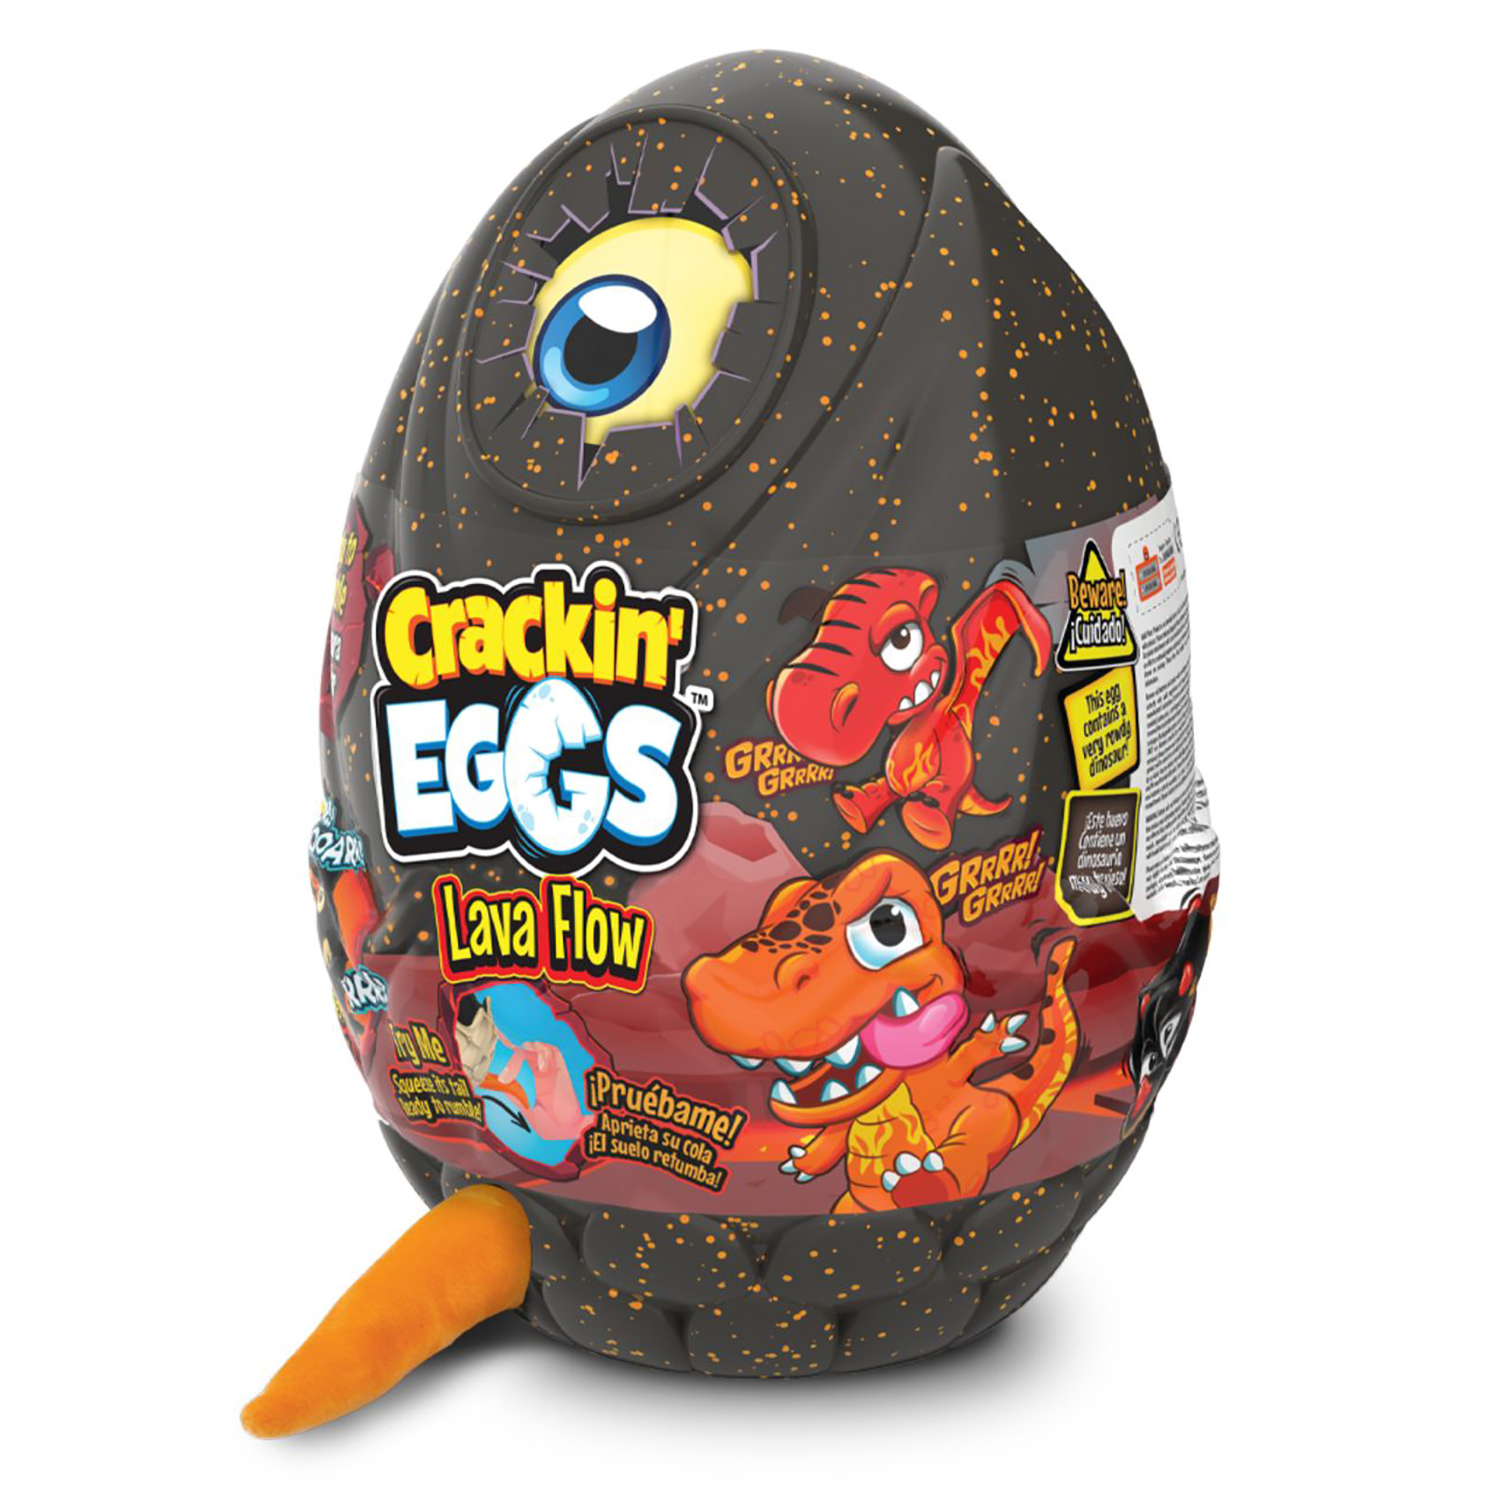 Мягкая игрушка Crackin' Eggs Динозавр оранжевый в яйце, серия Лава, 22 см